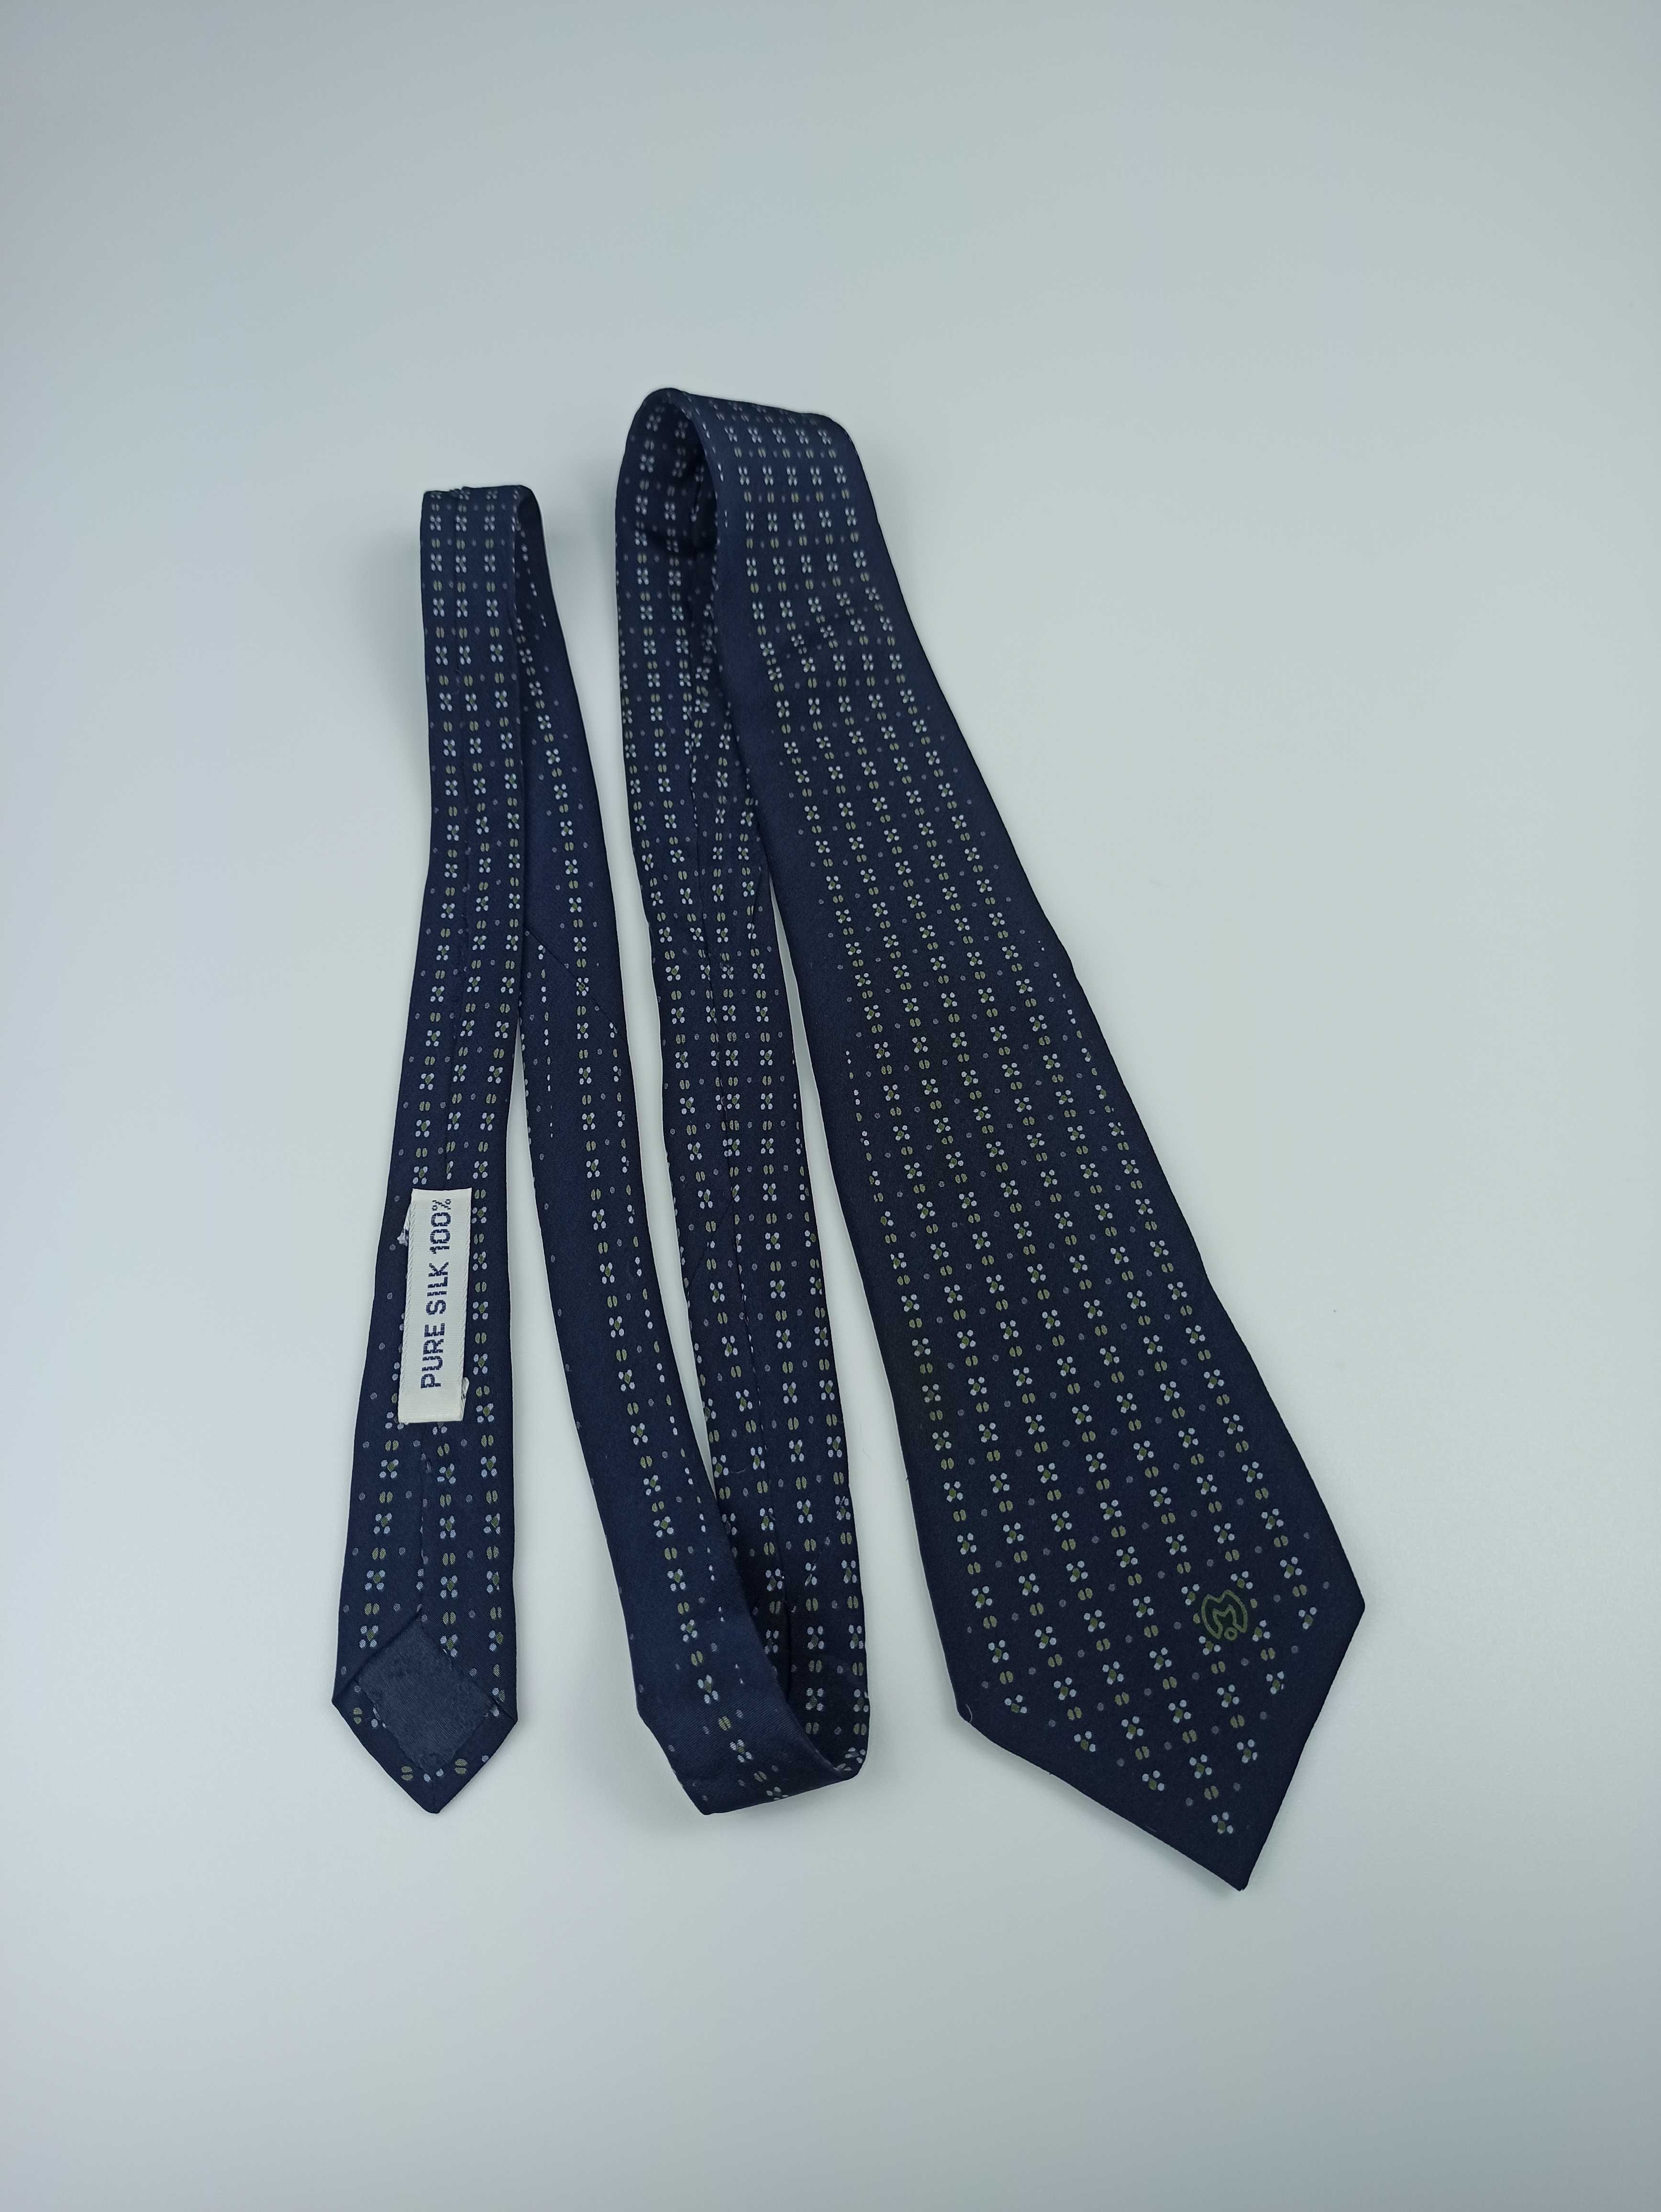 Mila Schon granatowy jedwabny krawat vintage retro fa34